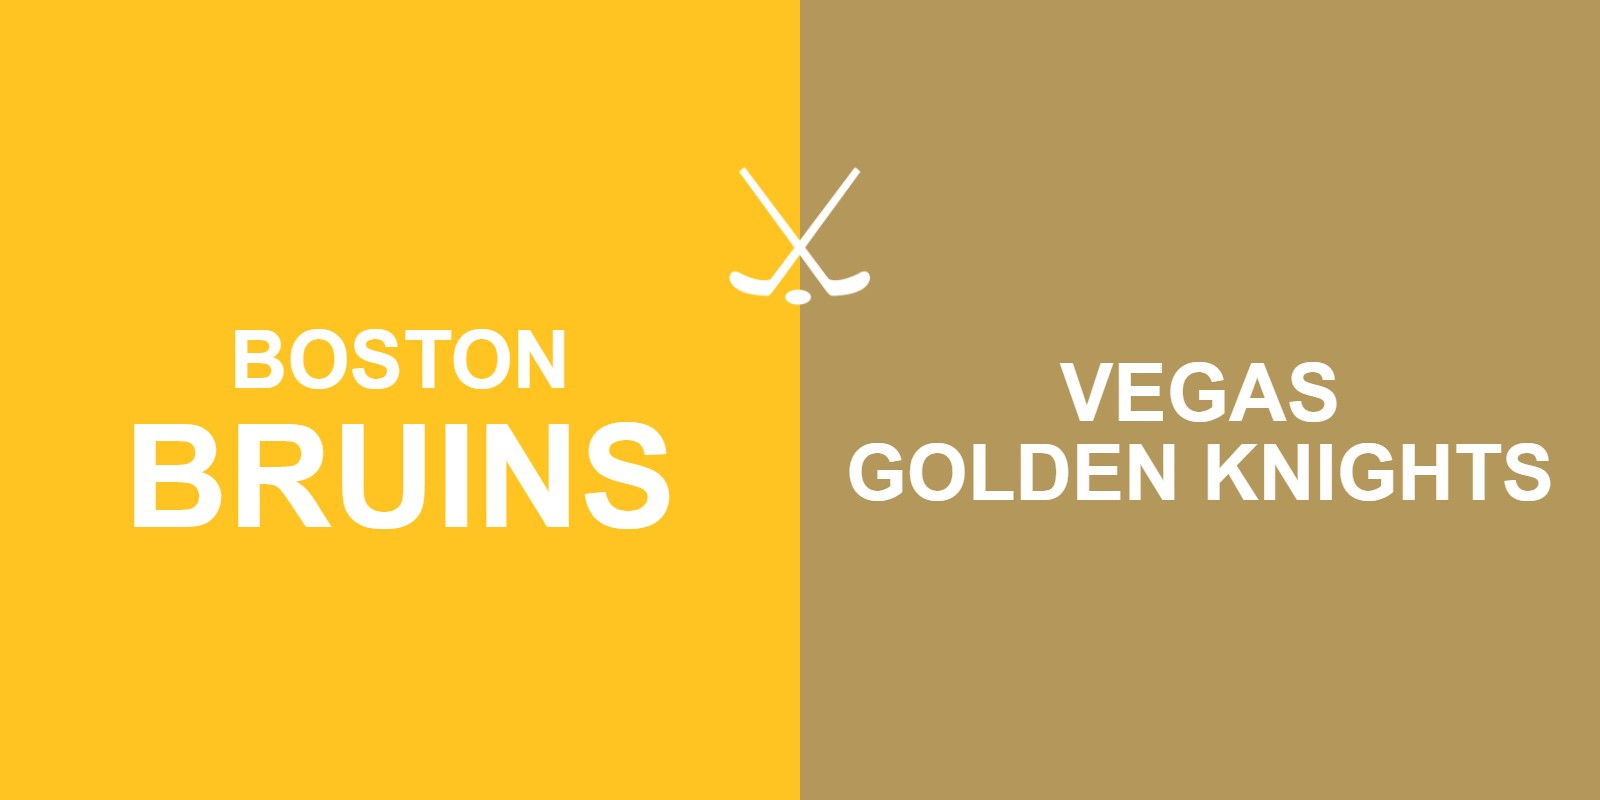 Bruins vs Golden Knights